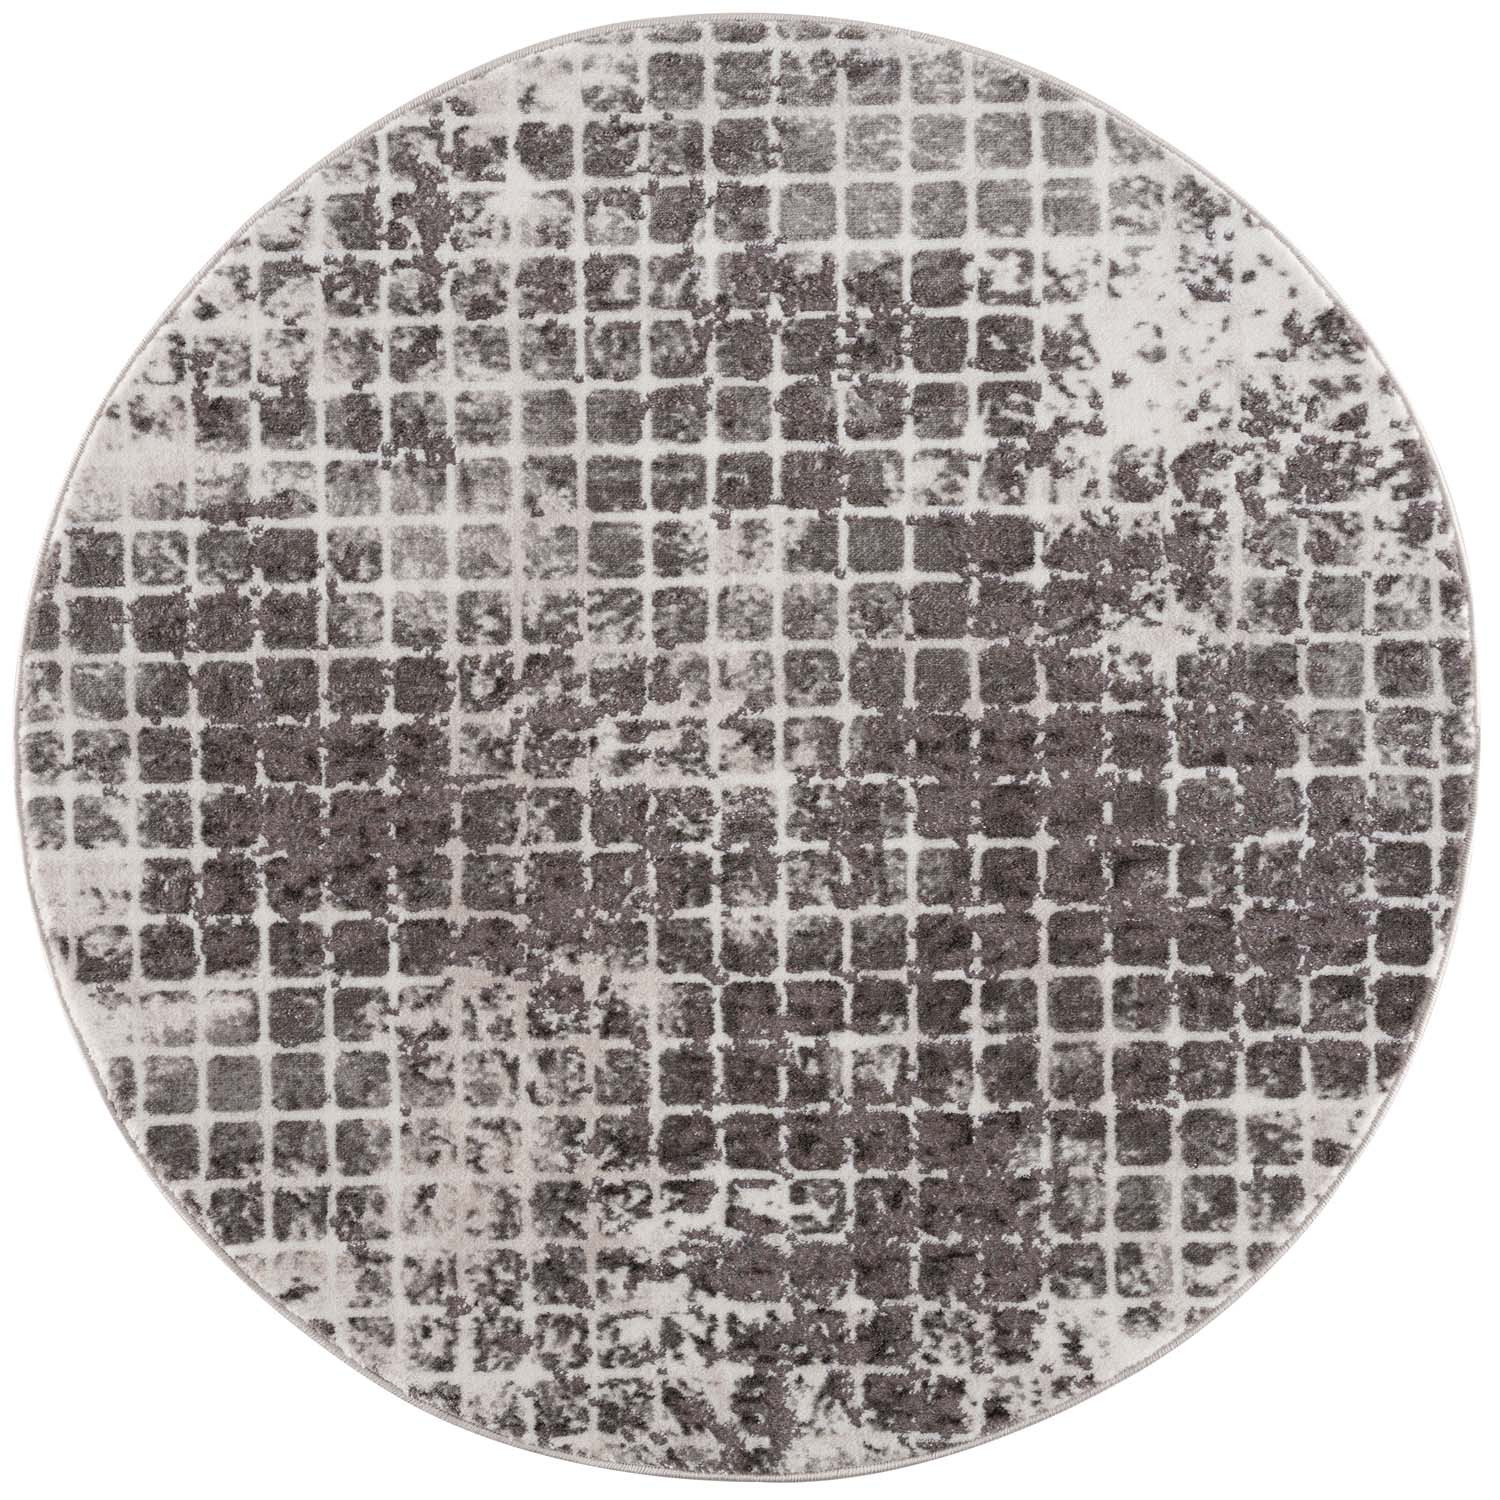 Moderný okrúhly koberec NOA - vzor 9328 sivý